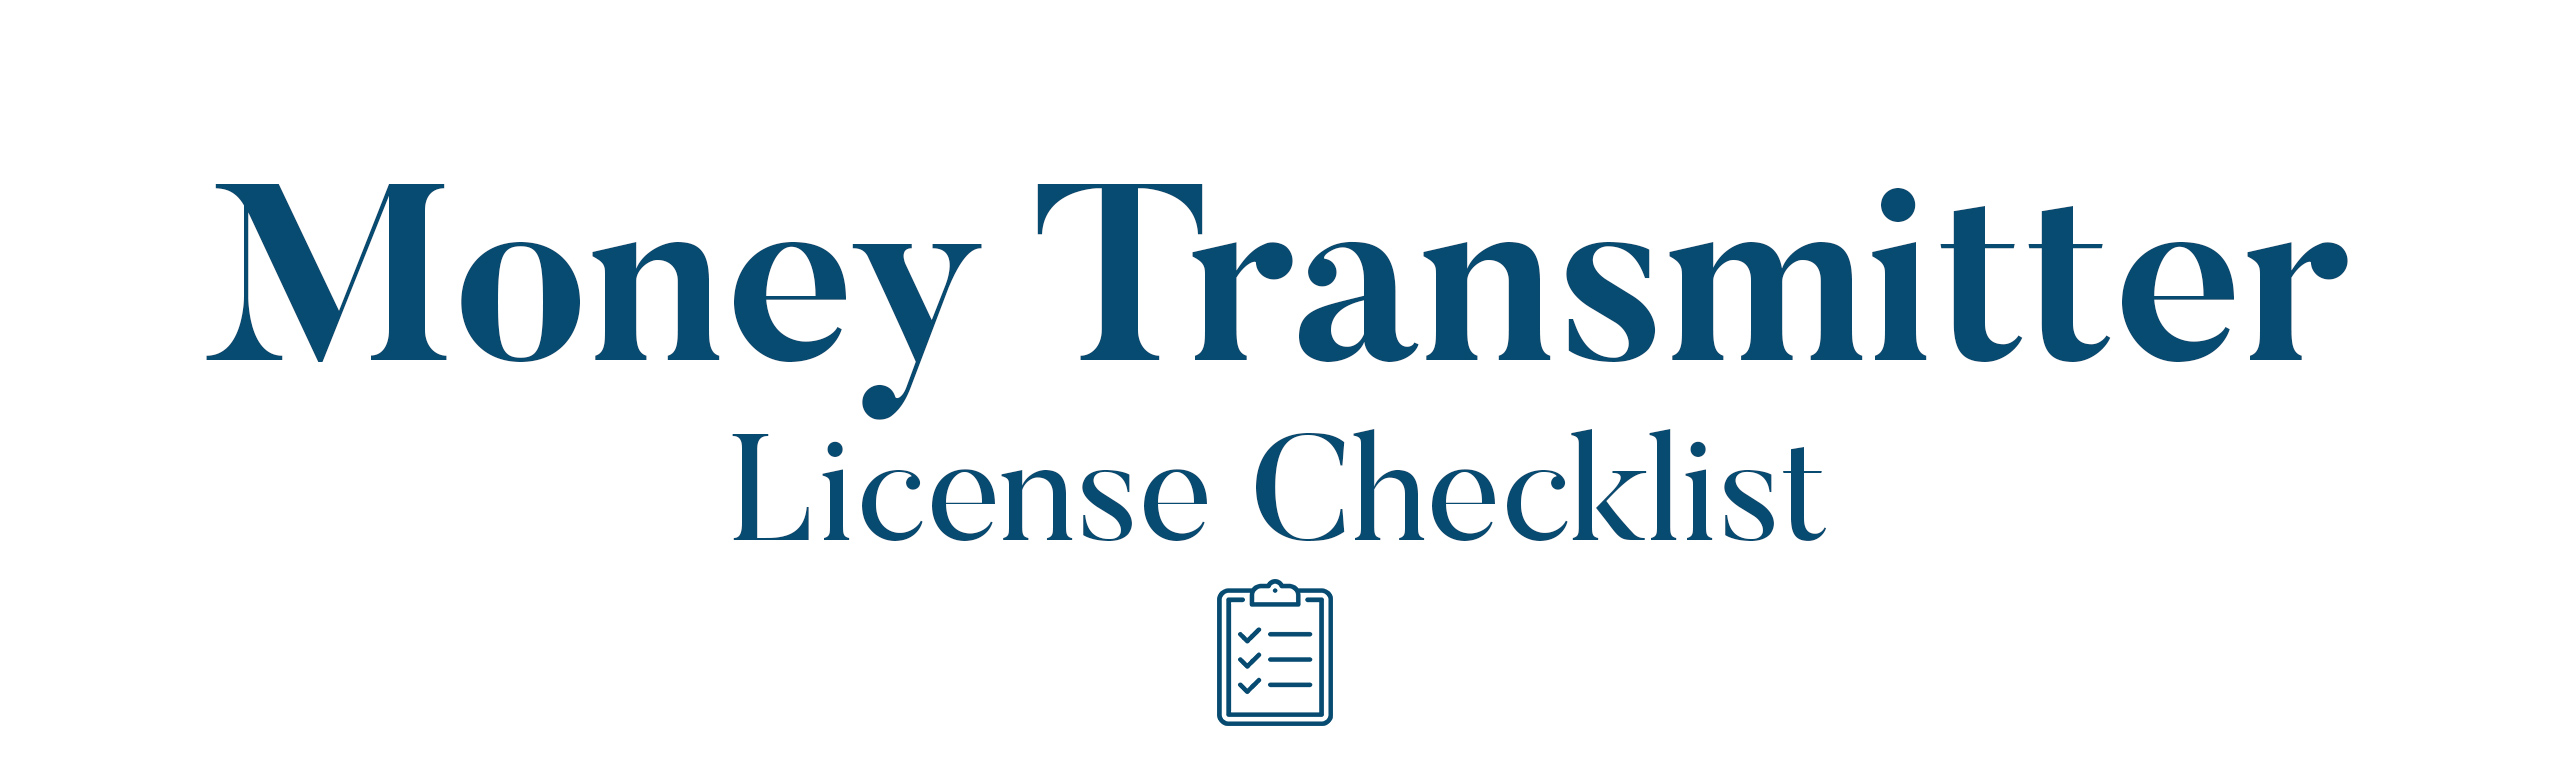 Money Transmitter License Checklist